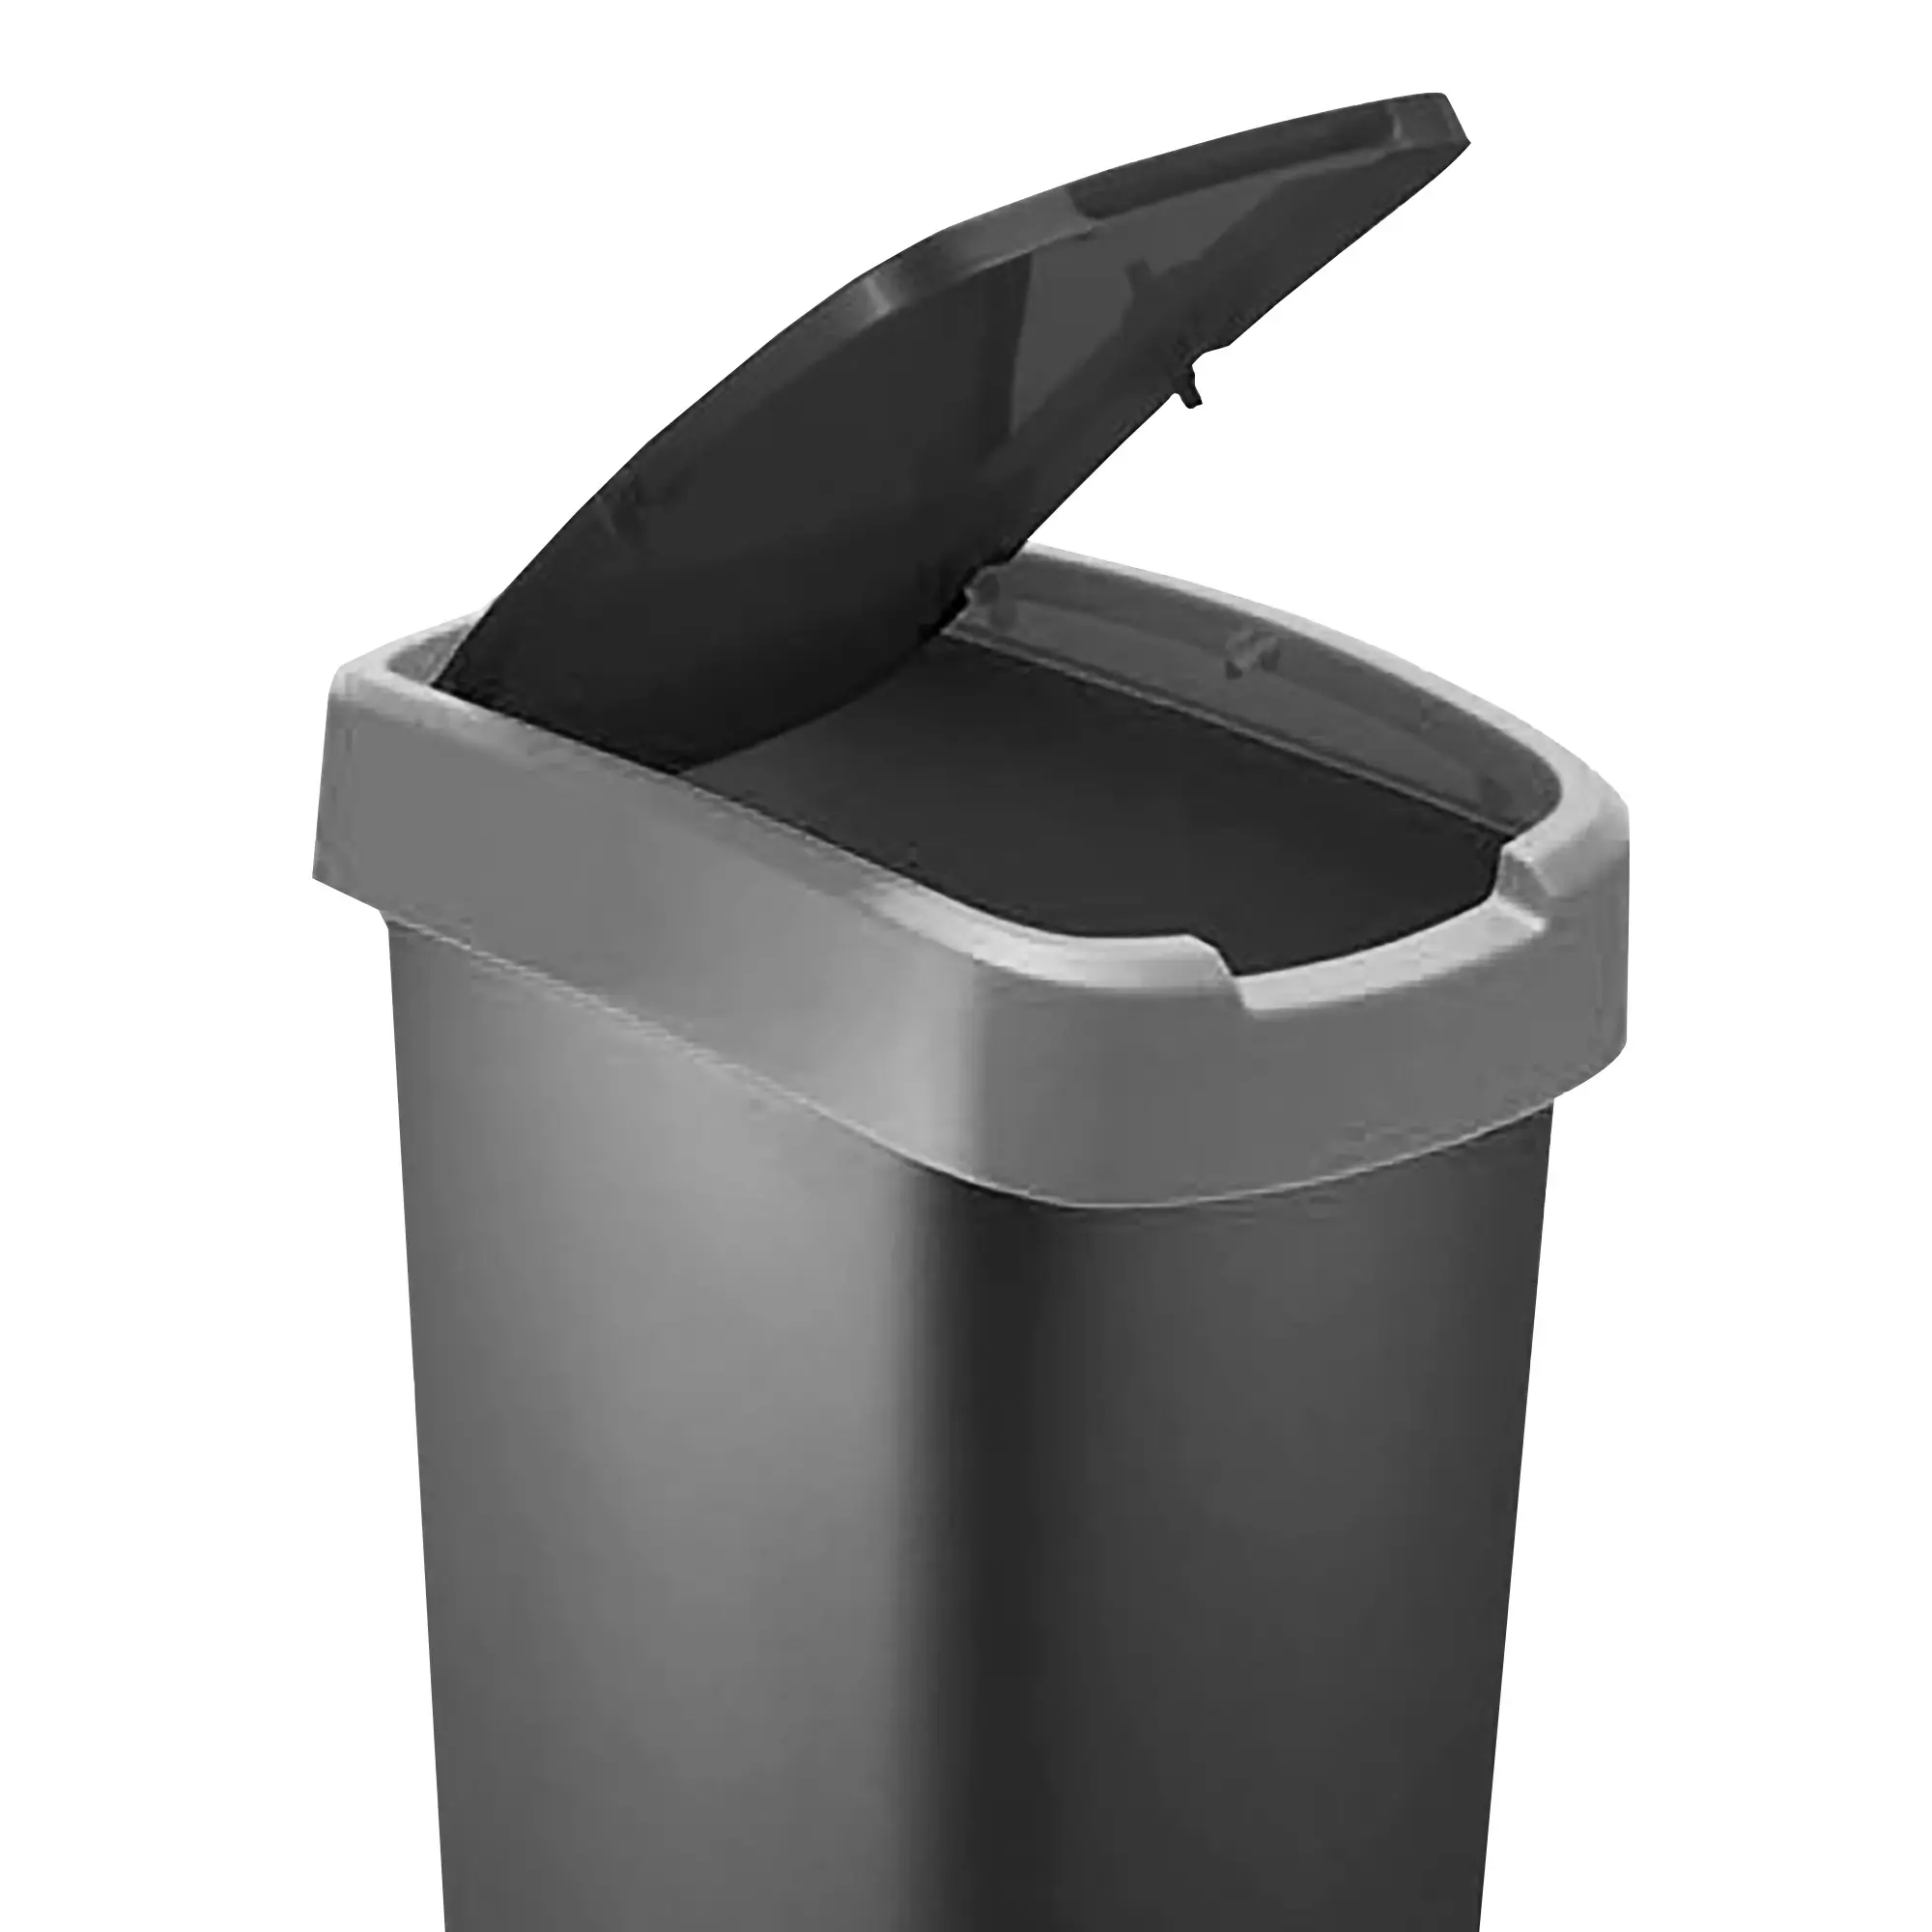 RothoPro Twist Abfallbehälter 25 Liter schwarz/silber Klappfunktion 59135391